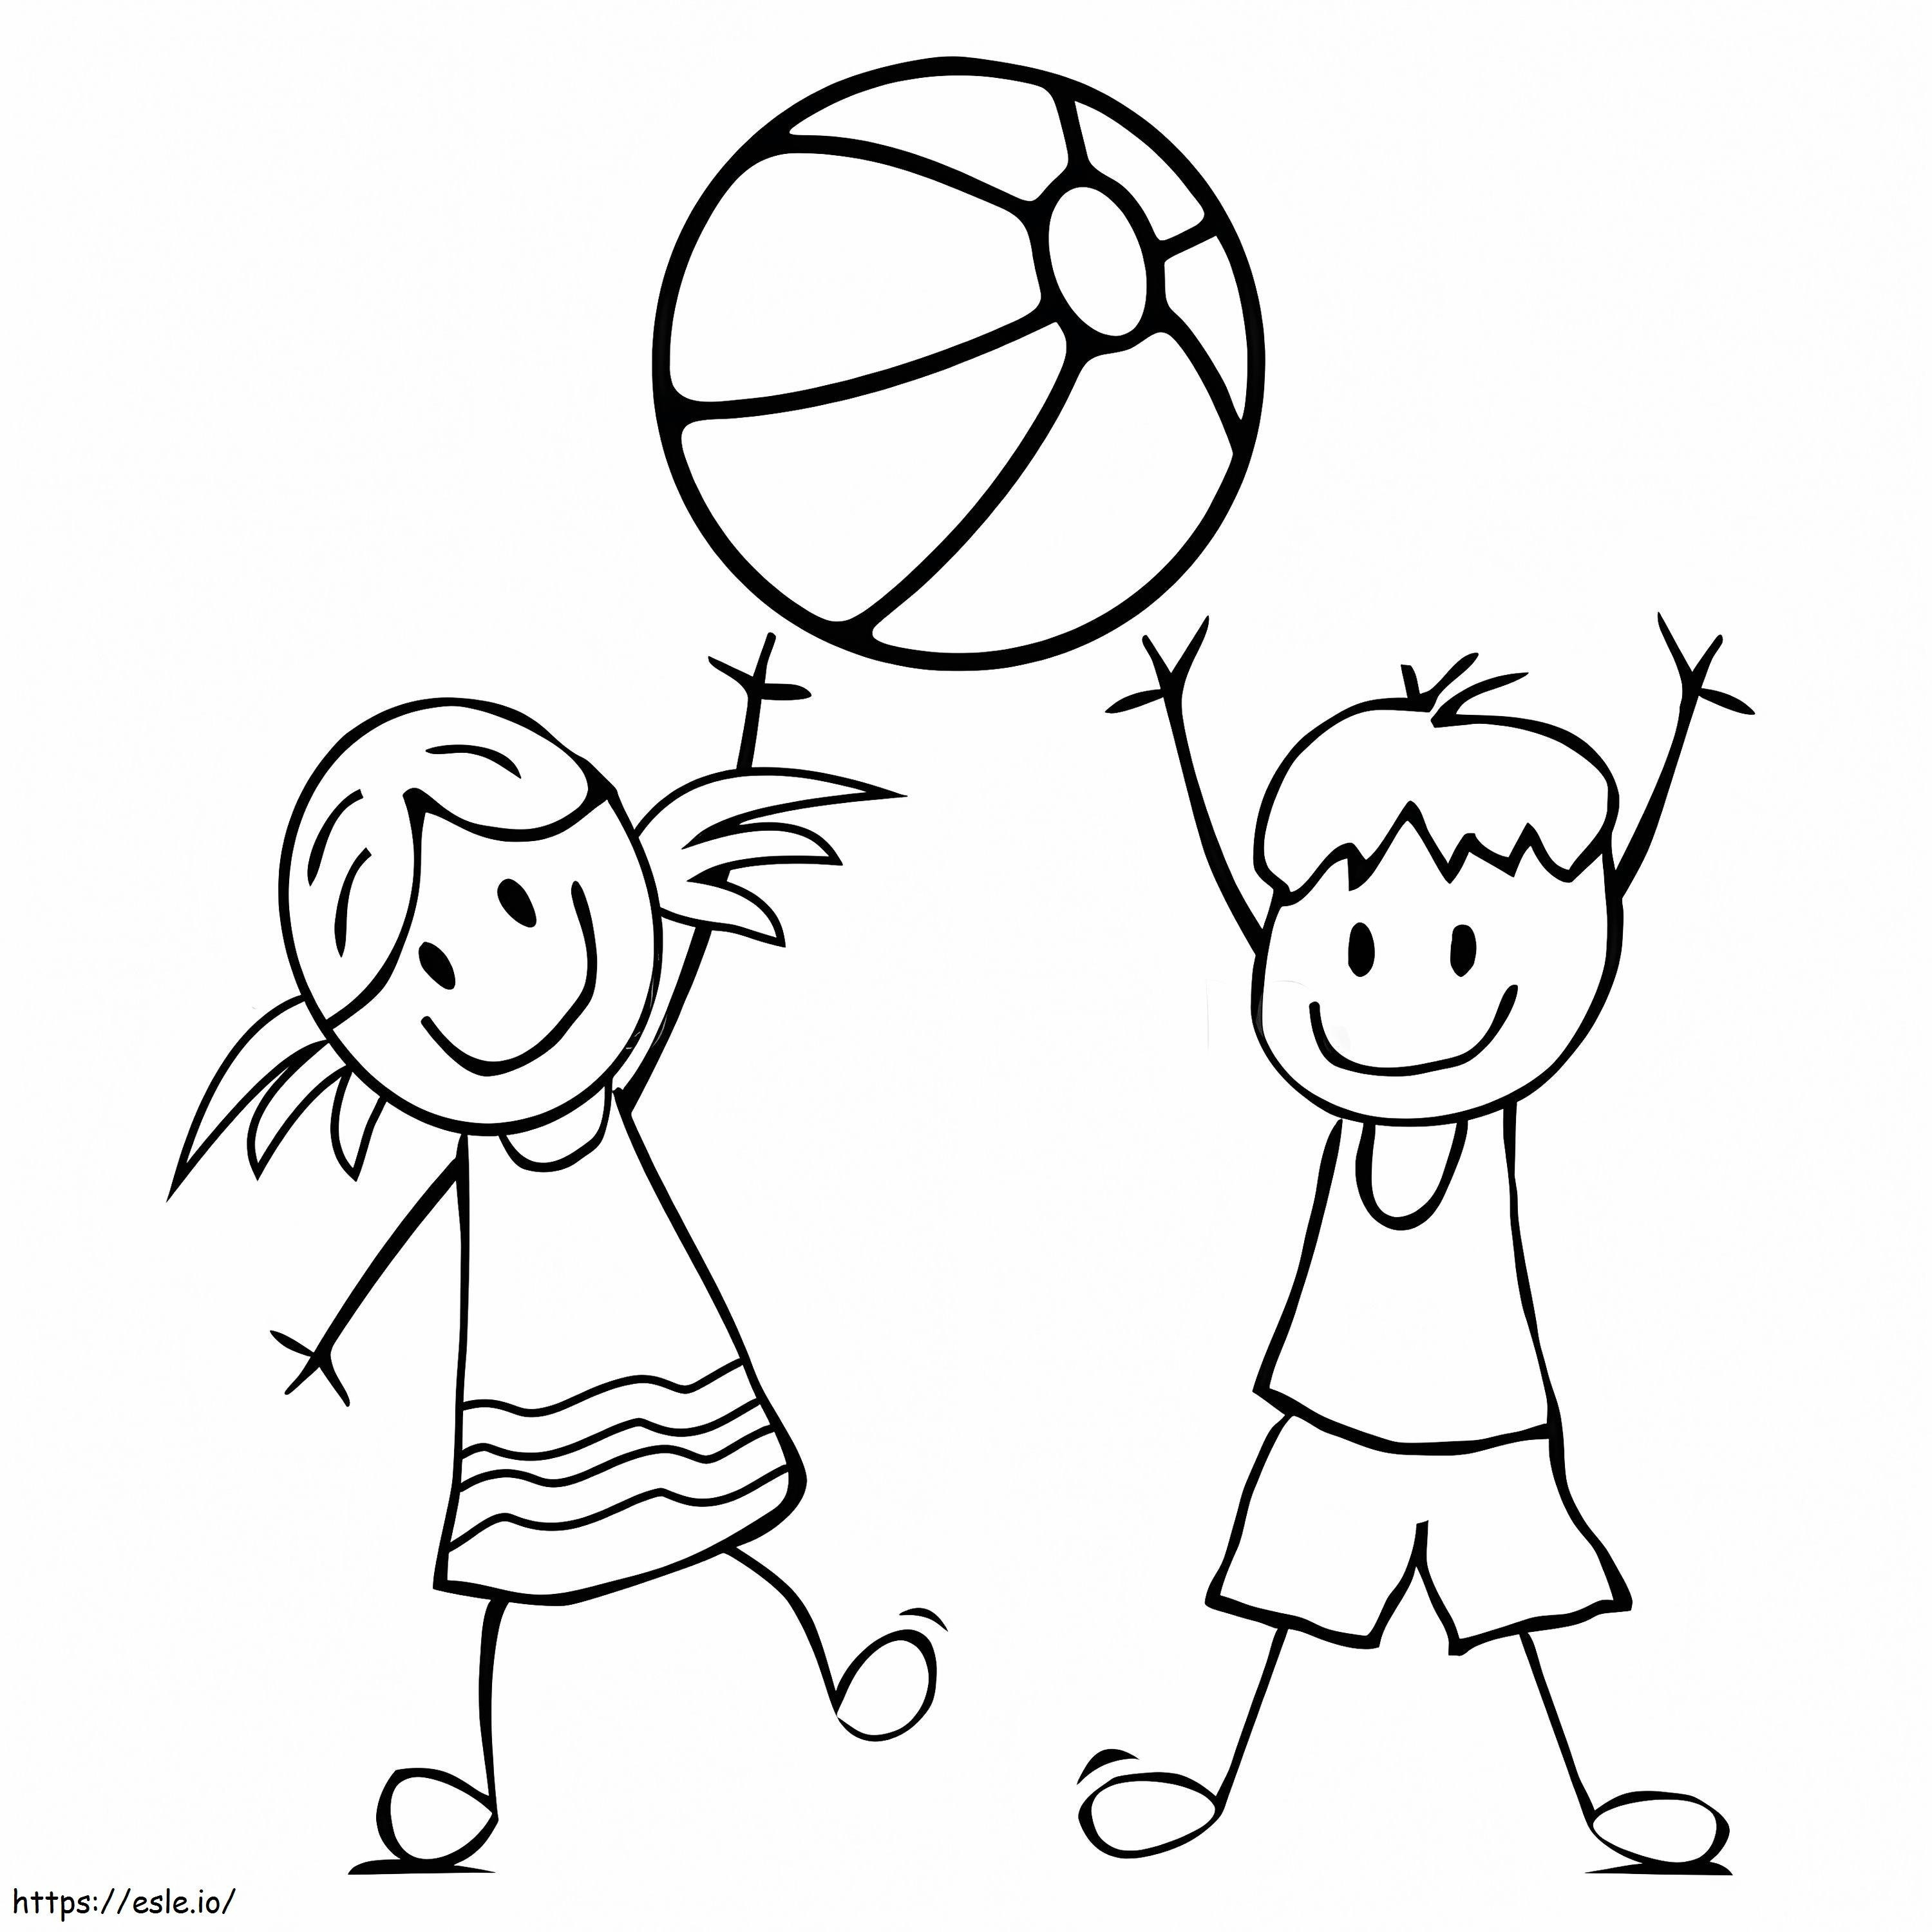 Kinder und Wasserball ausmalbilder